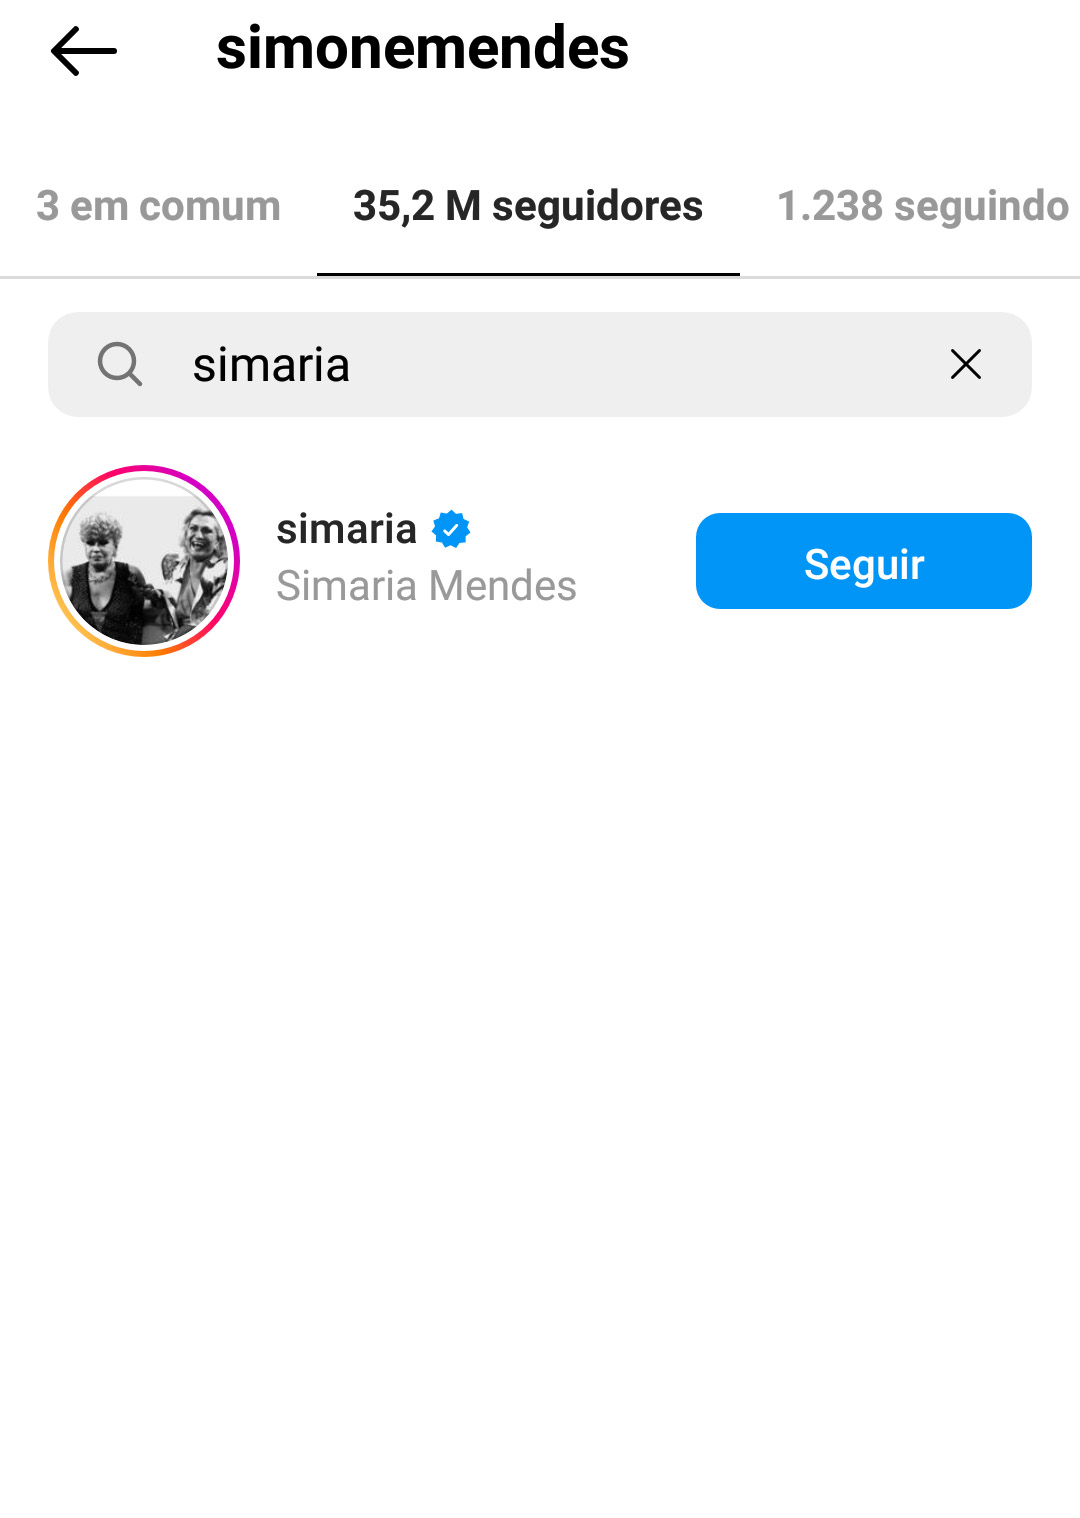 Foto retirada de uma tela de celular mostrando que Simaria está seguindo Simone no Instagram